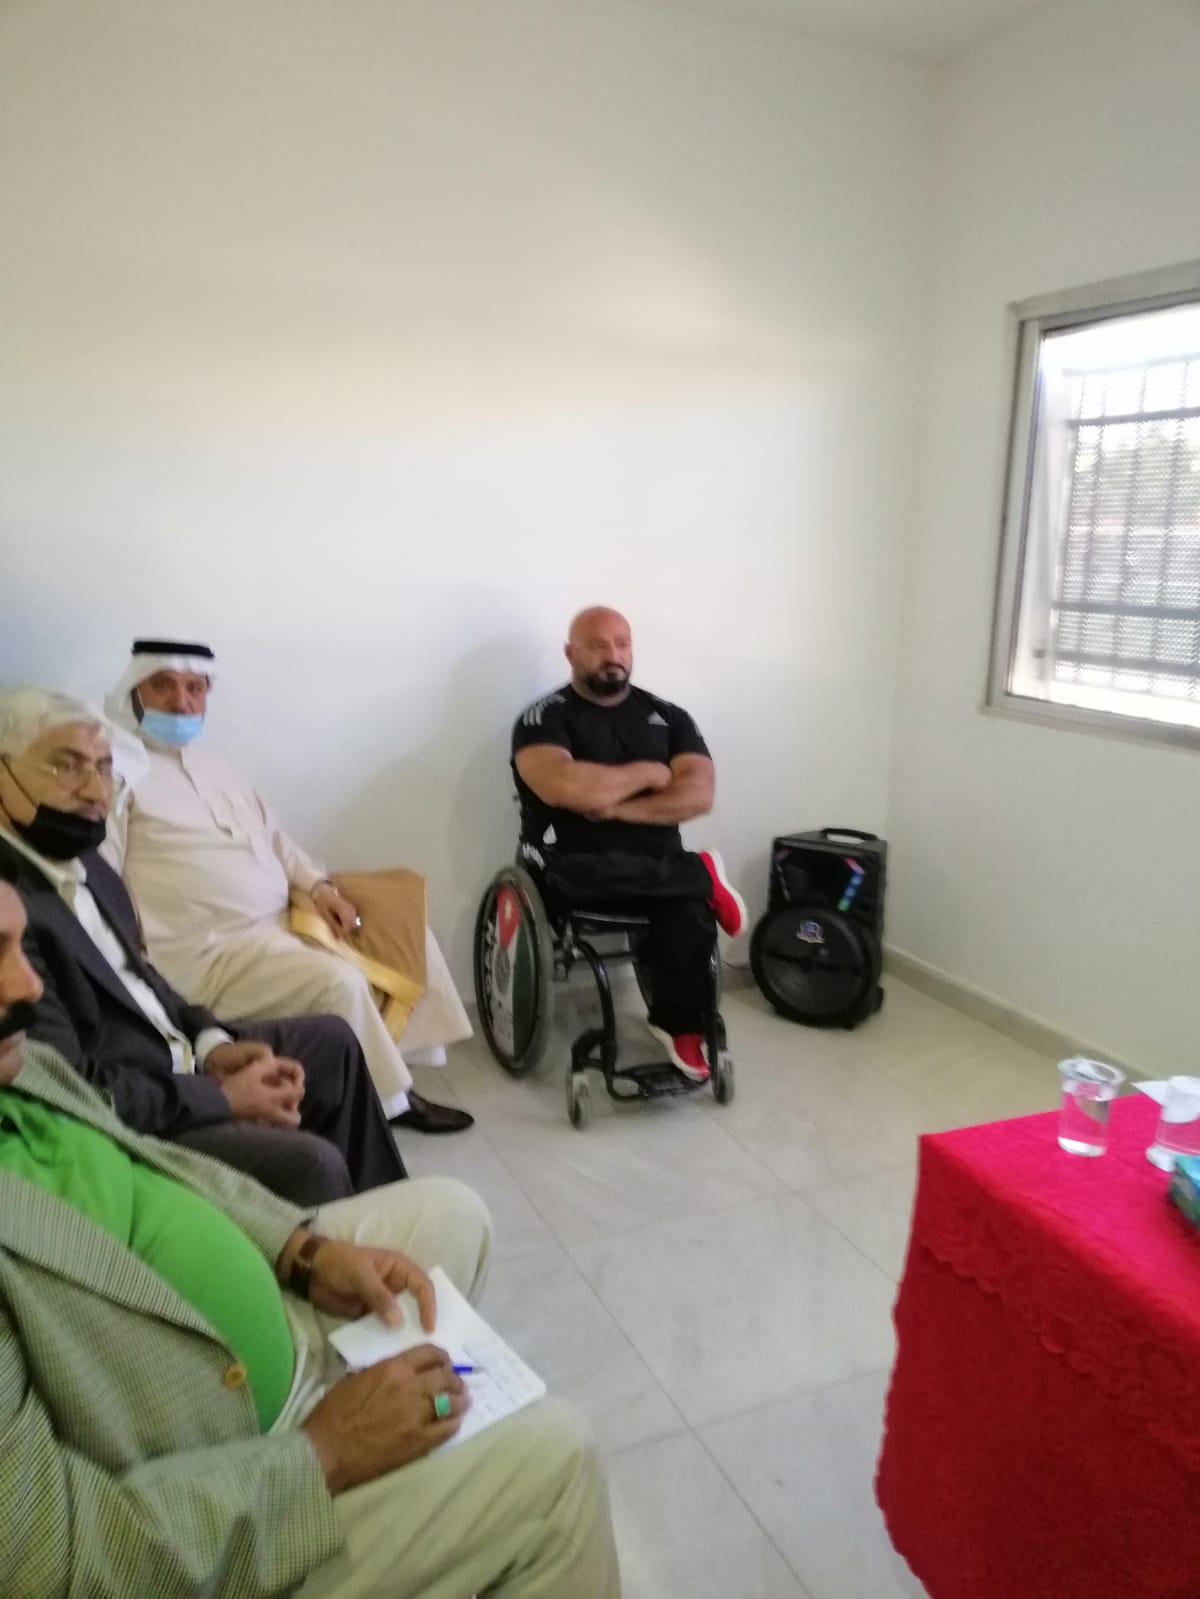 الشورى ينظم لقاء مع لجنتي المرأة والشباب في اللجنة الملكية